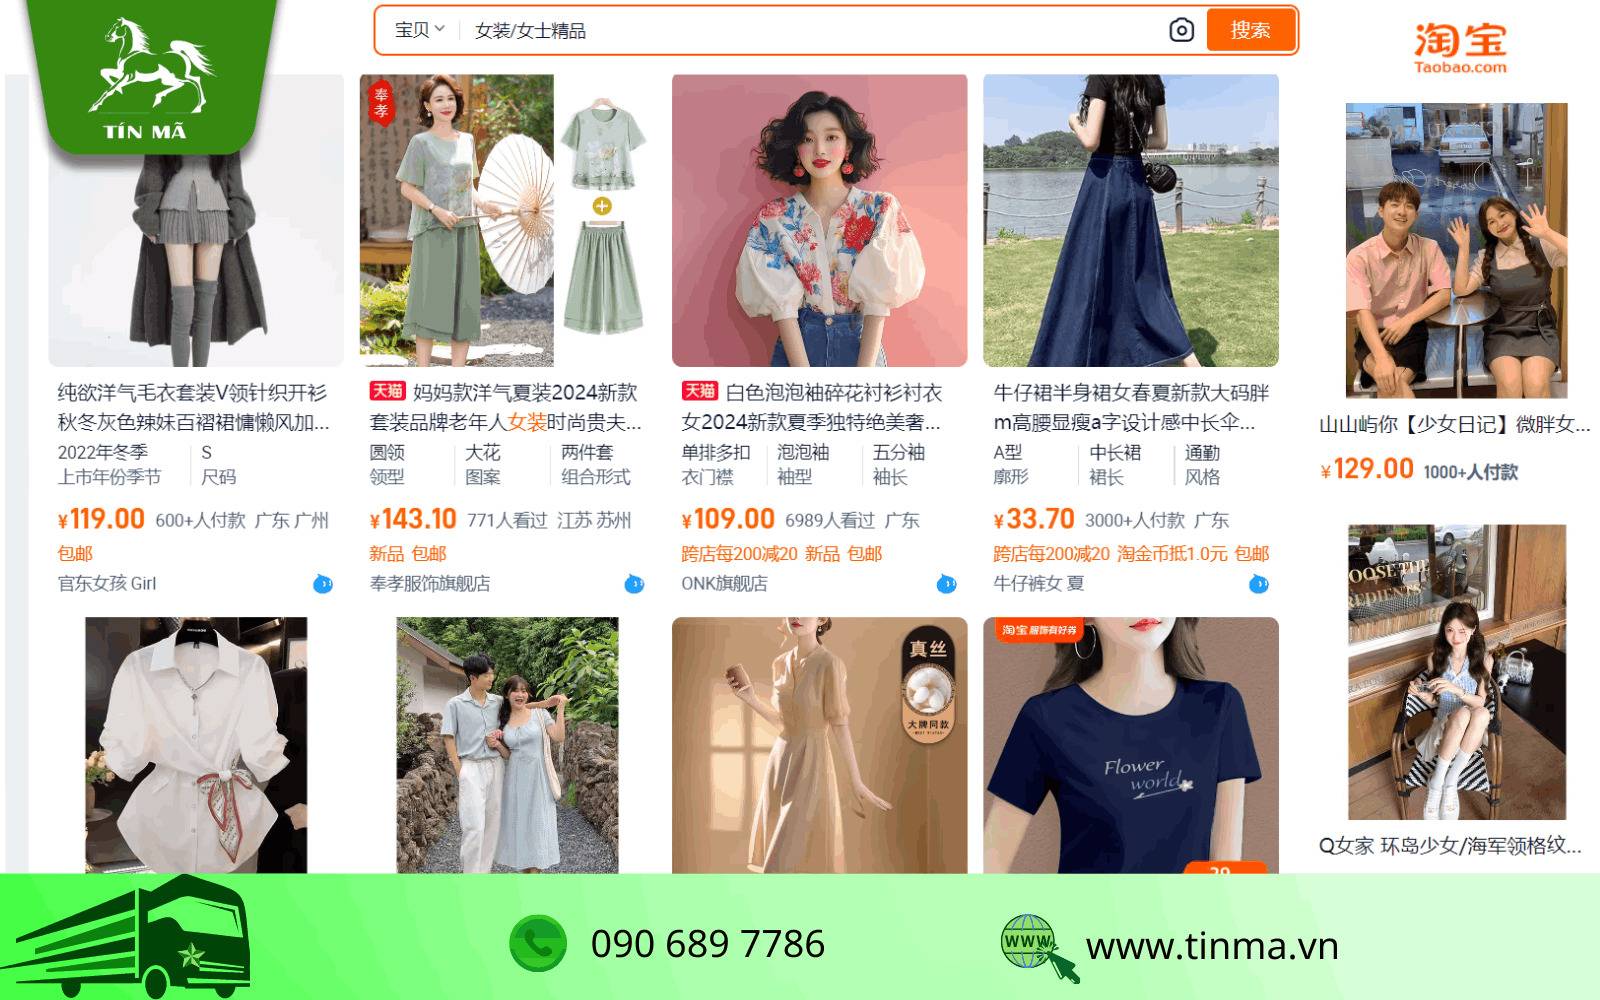 Tham khảo các link mua hàng trên Taobao mặt hàng thời trang đẹp, chất lượng